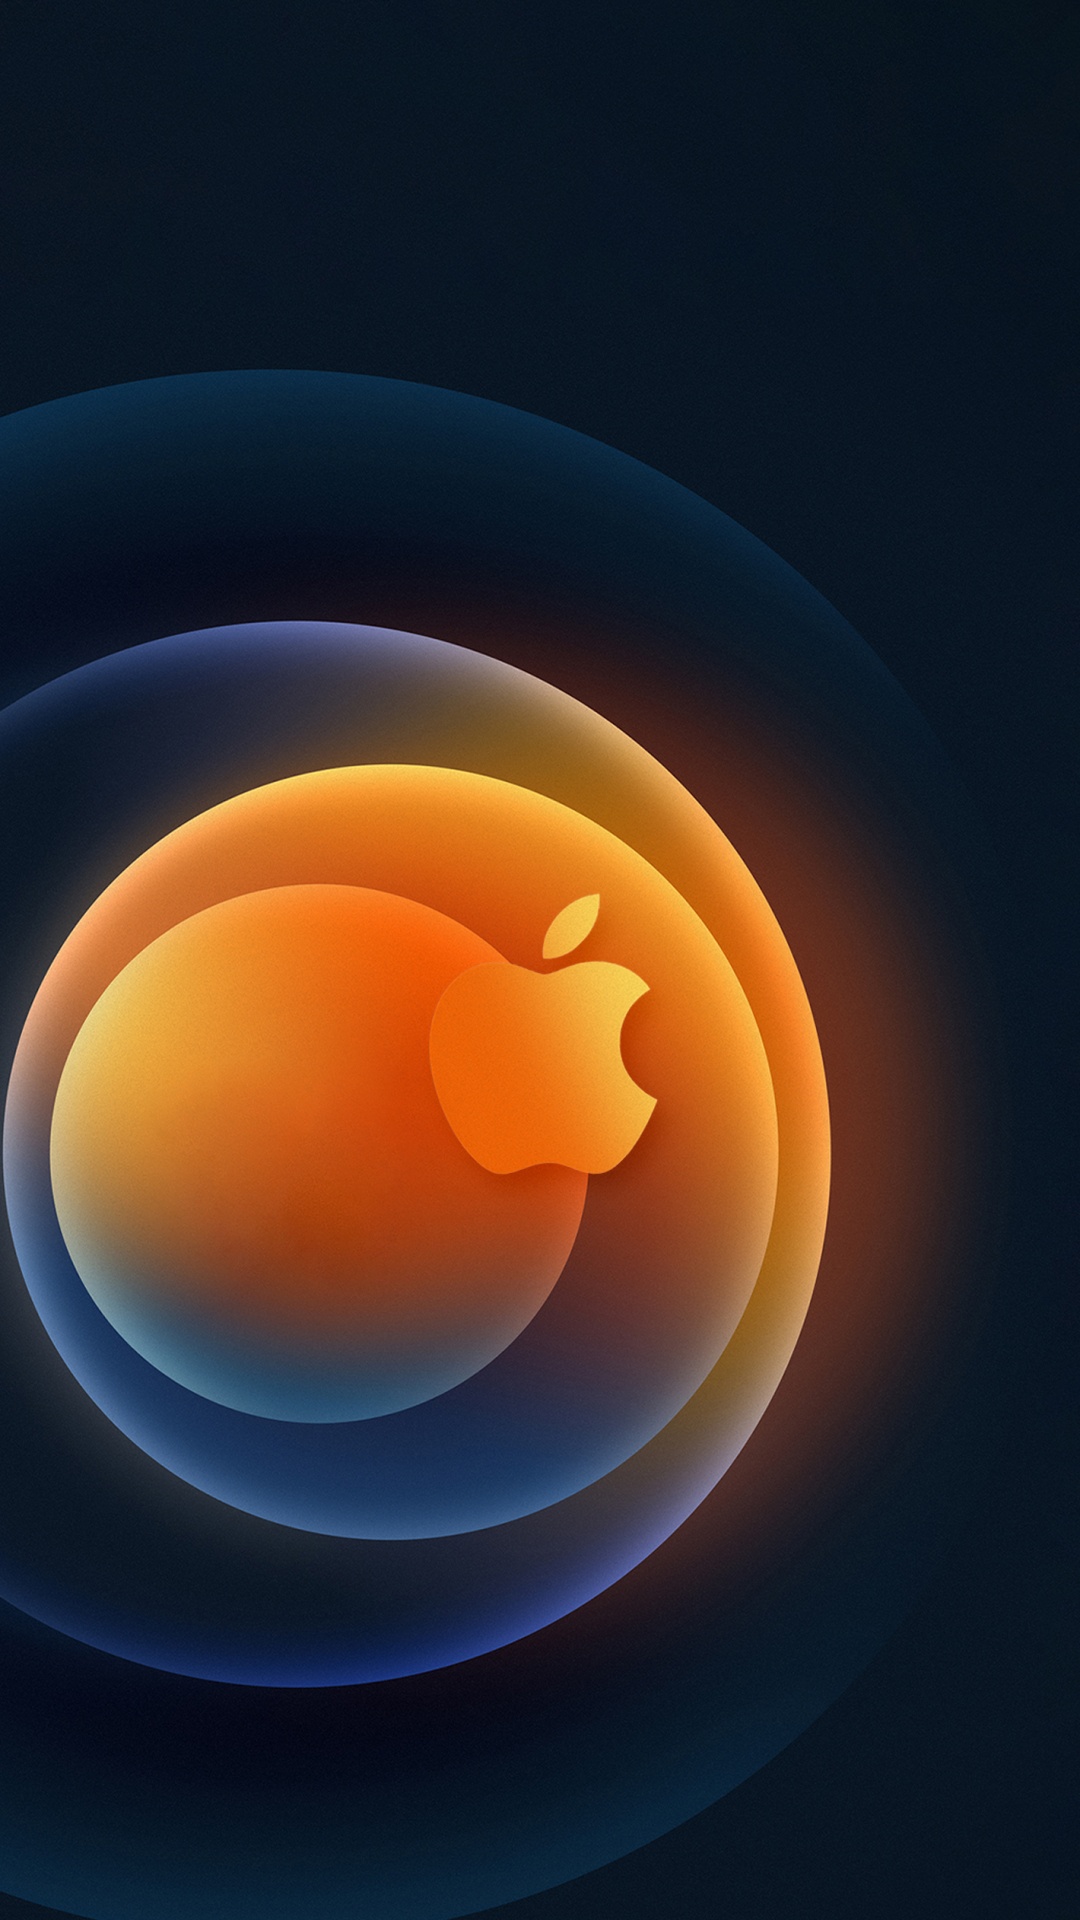 IPhone, Apple, Orange, la Pureté de la Couleur, Ambre. Wallpaper in 1080x1920 Resolution